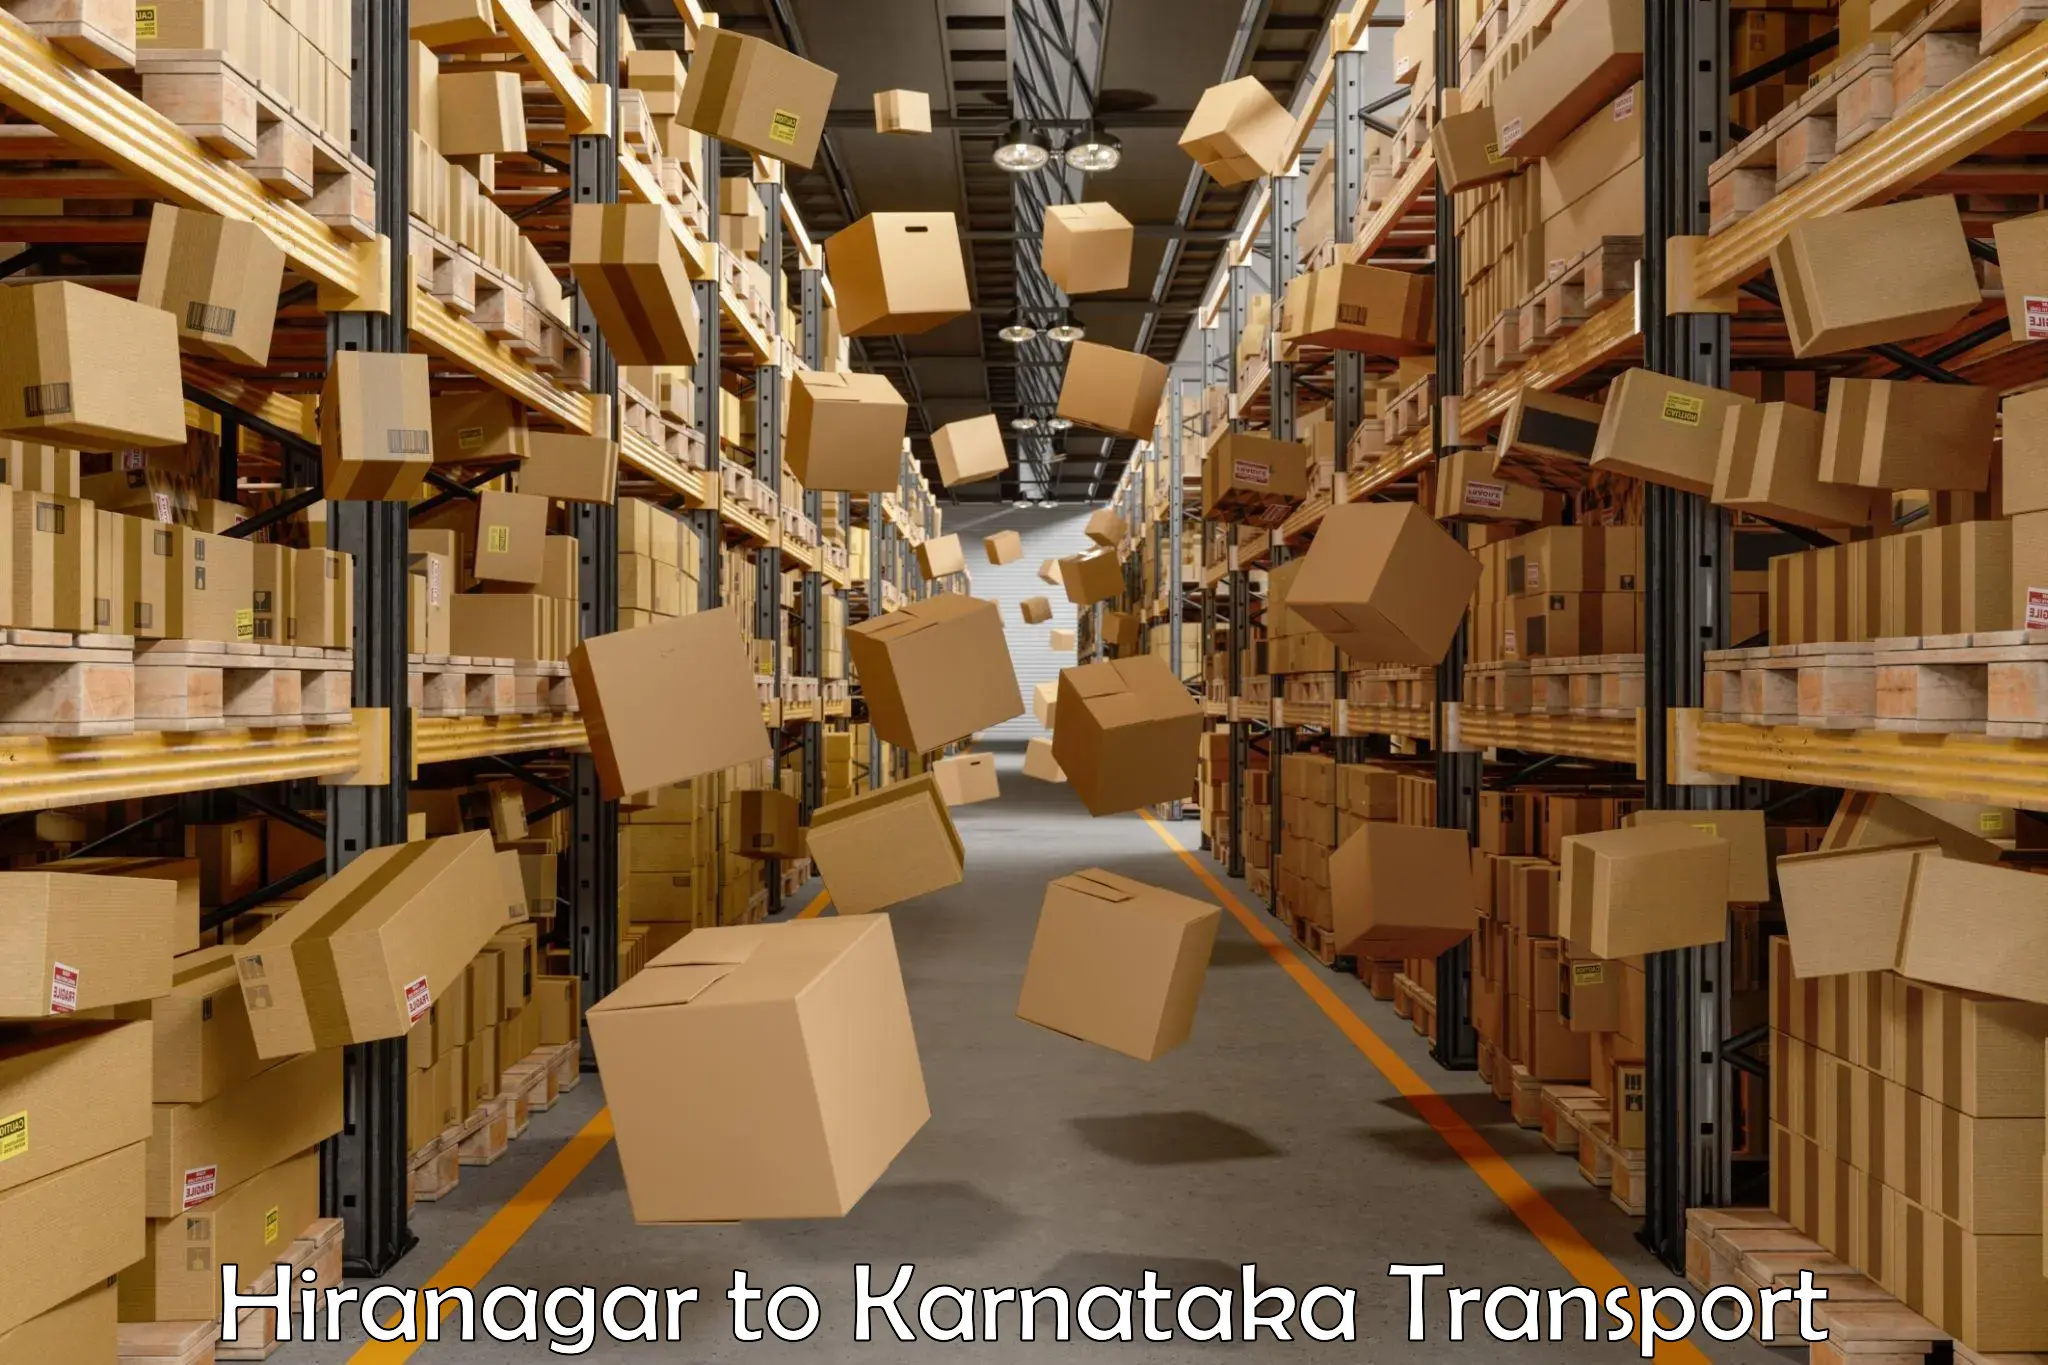 Online transport service Hiranagar to Madhugiri